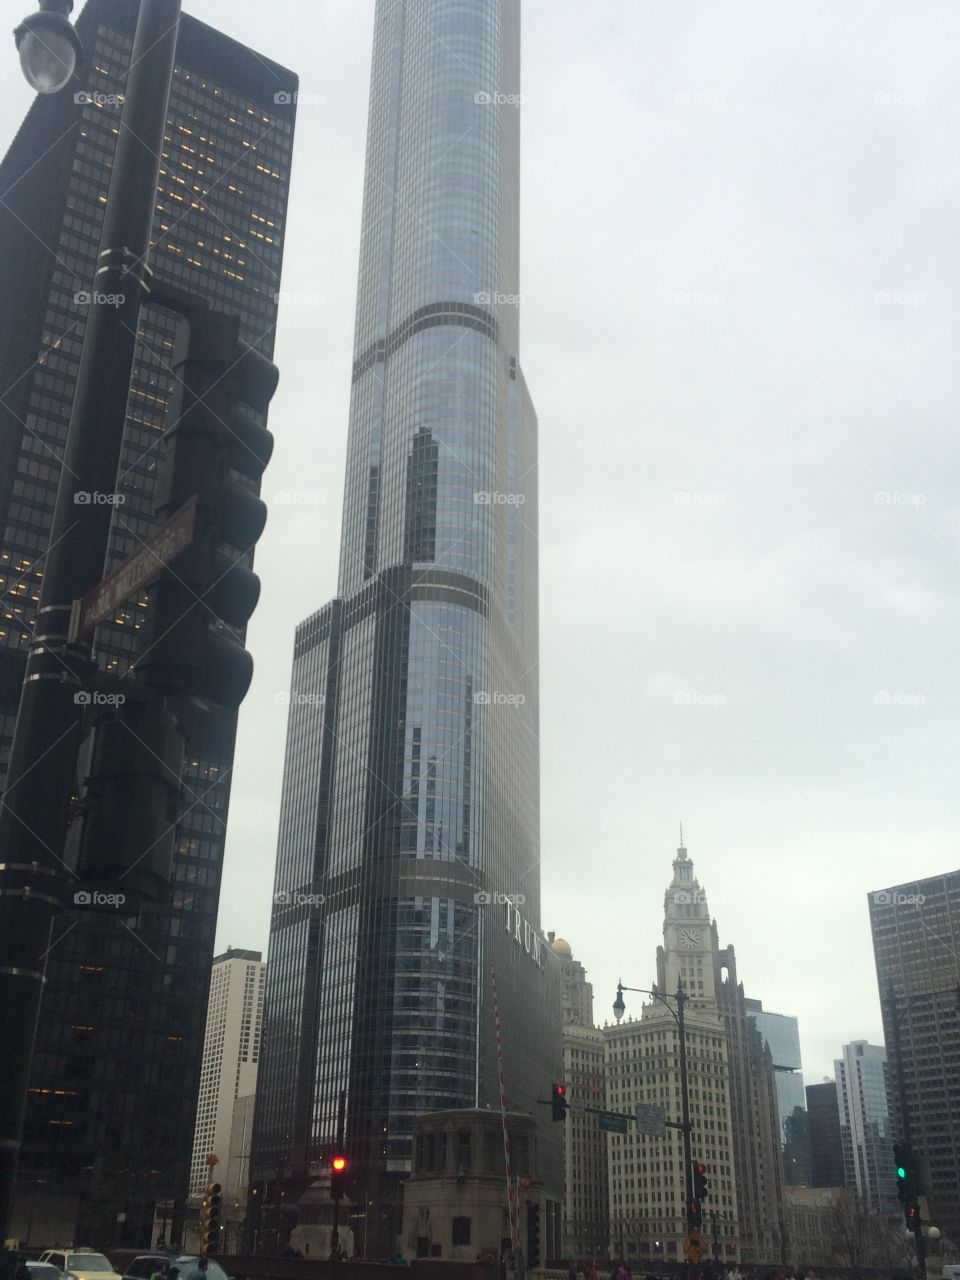 Chicago skyscraper!
2016